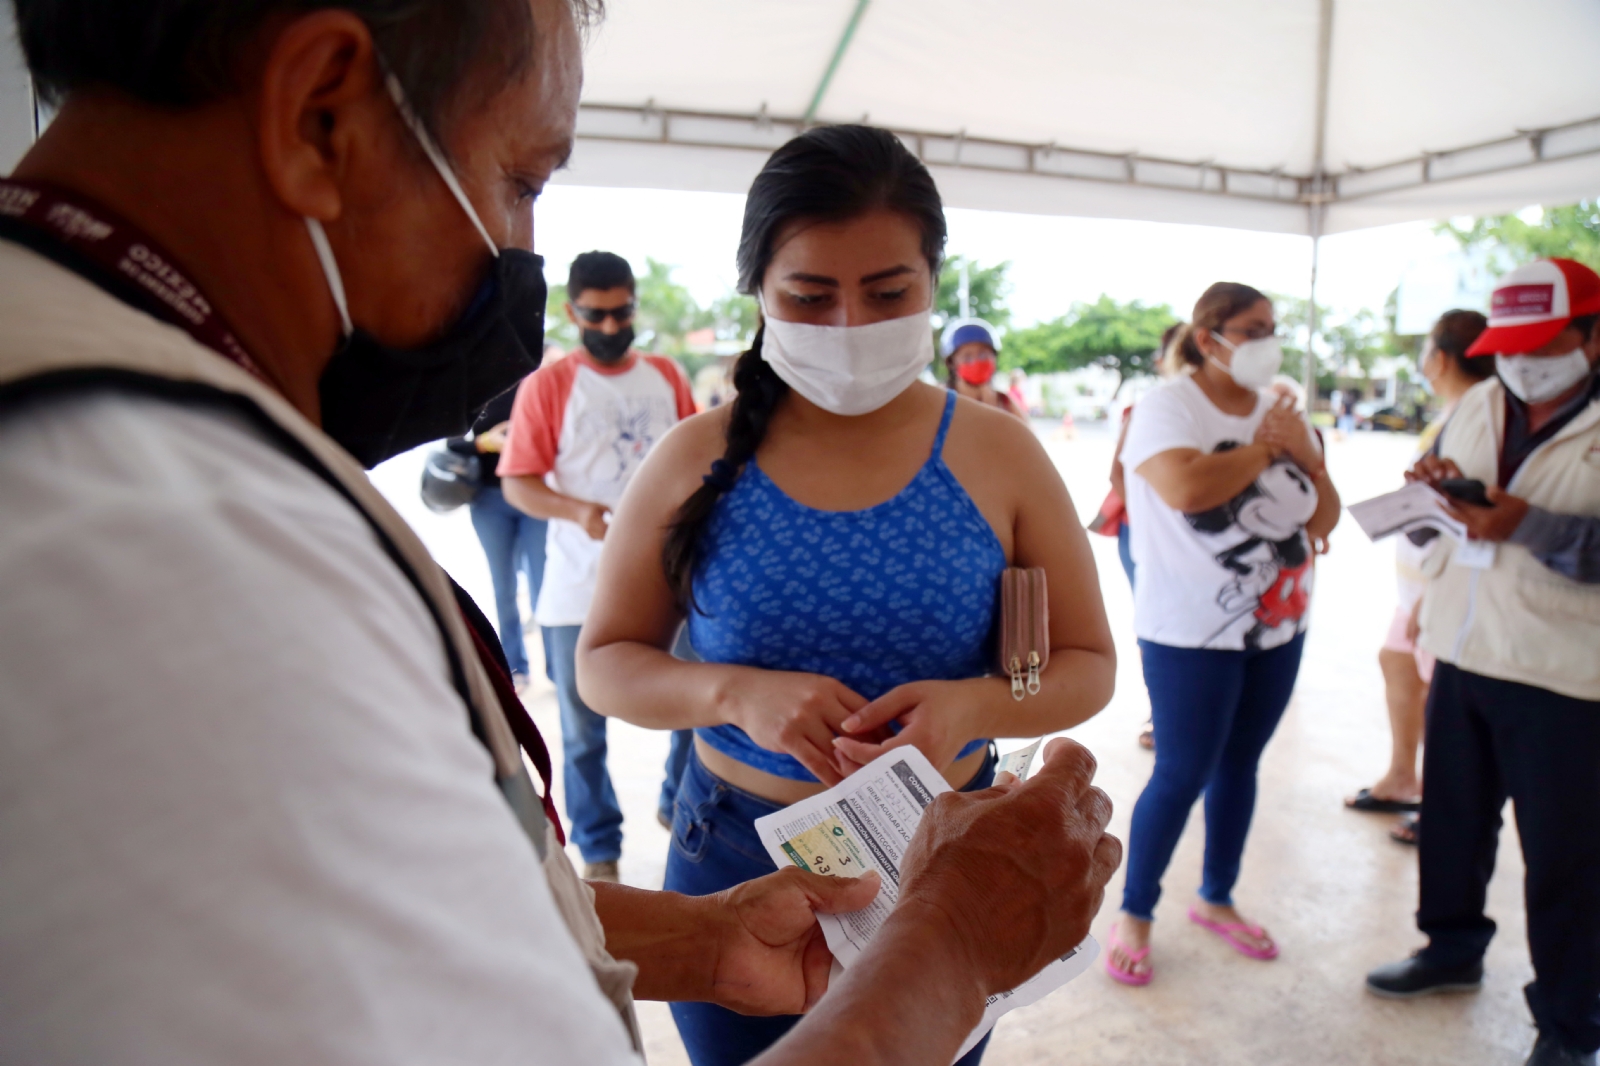 Yucatán registra 36 contagios nuevos y 4 muertes por COVID-19 en 24 horas